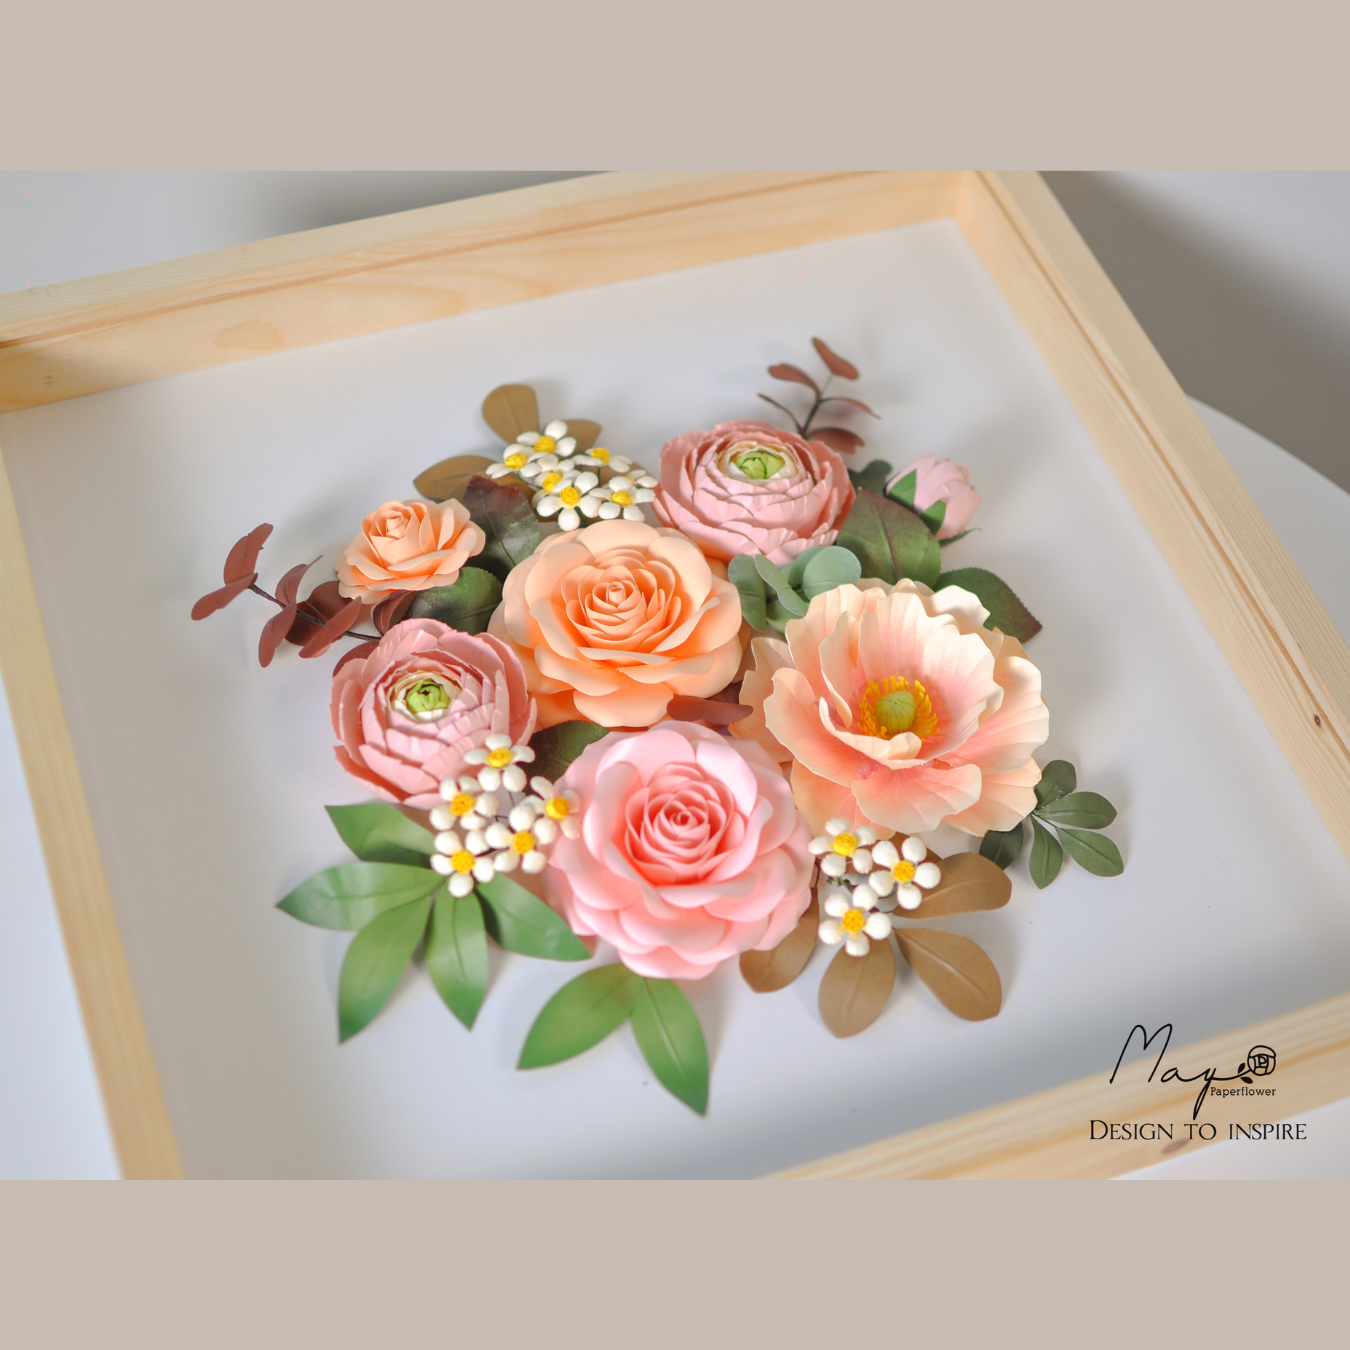 Tranh hoa giấy handmade trang trí cao cấp Pretty Girl 33x33cm - Maypaperflower Hoa giấy nghệ thuật